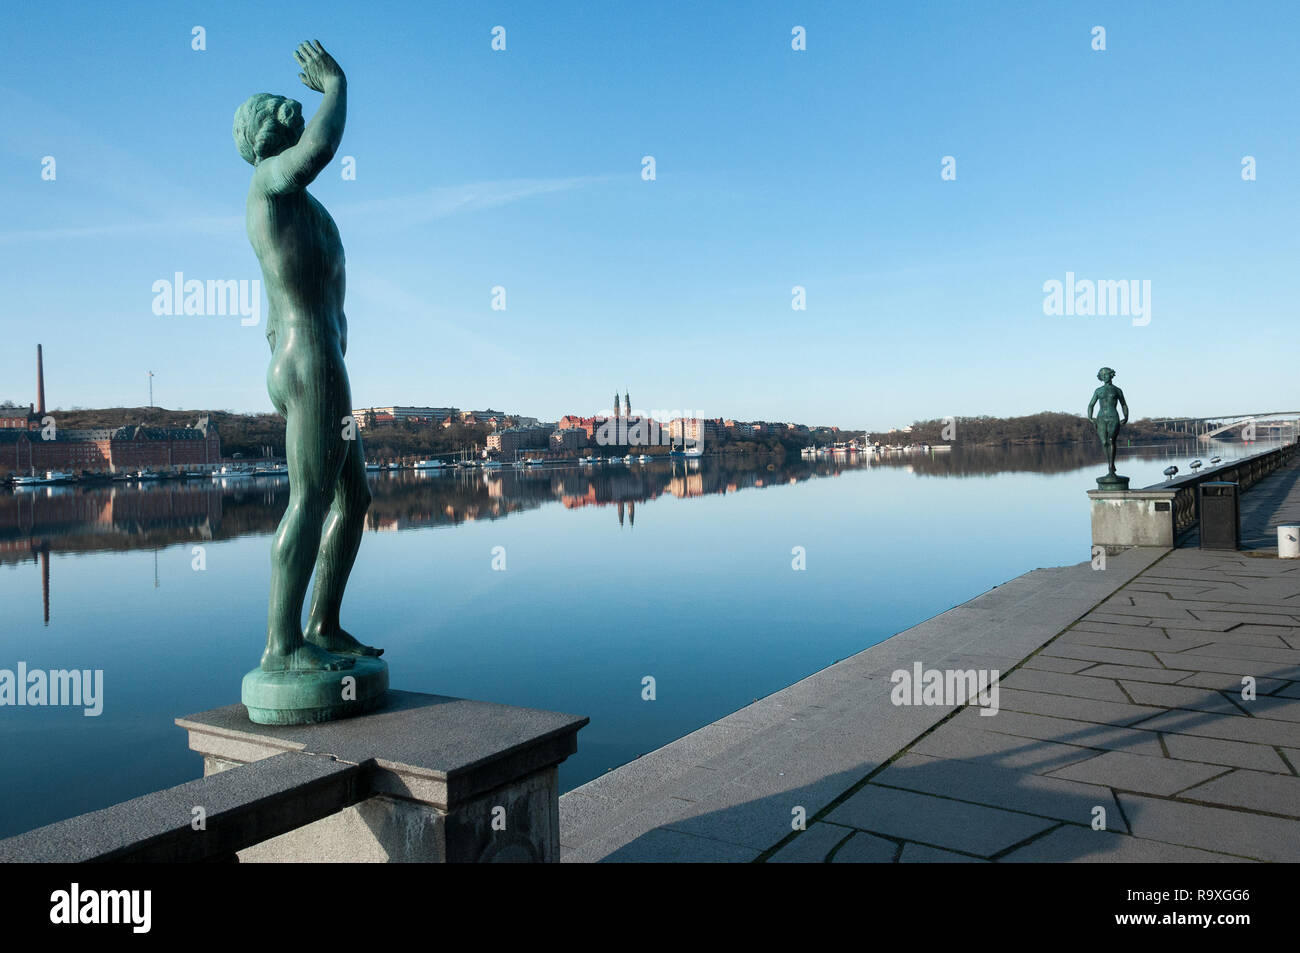 Vista desde el muelle del Ayuntamiento de Estocolmo, cerca del Lago Malaren, Estocolmo, Suecia, 12 de octubre de 2016. Foto de stock